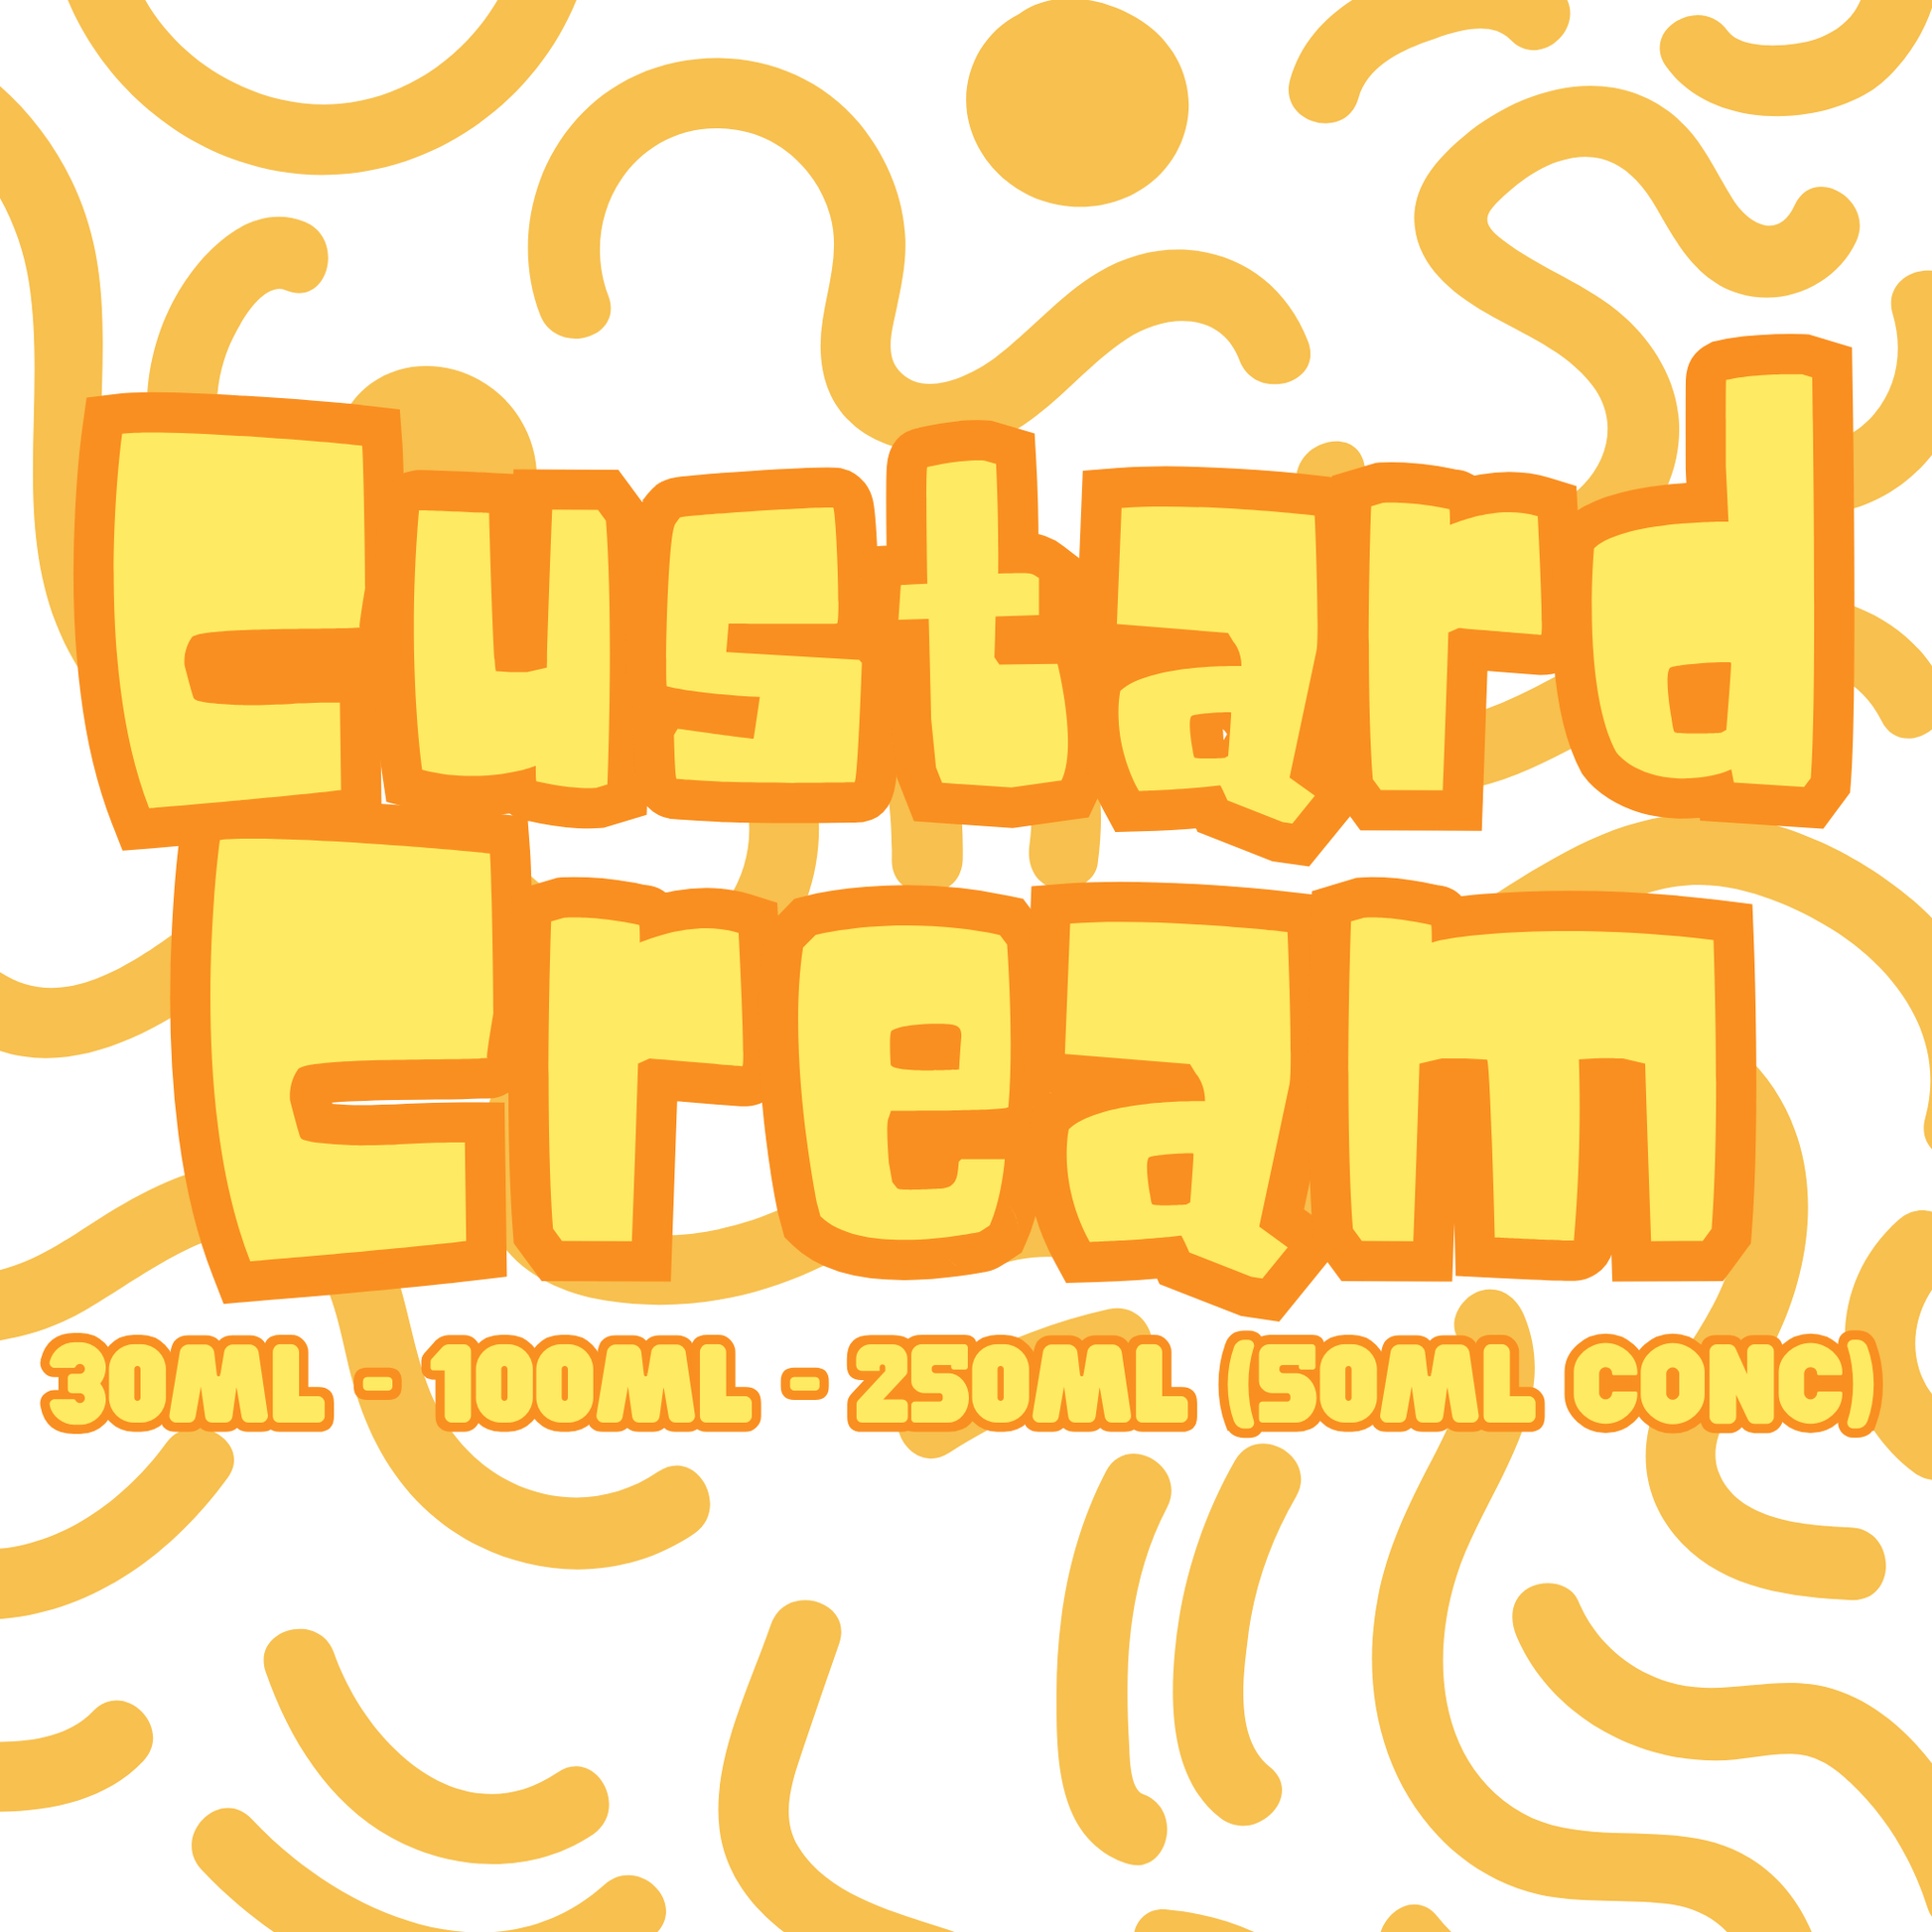 Custard Cream - Flavour Craver - Flavour Craver